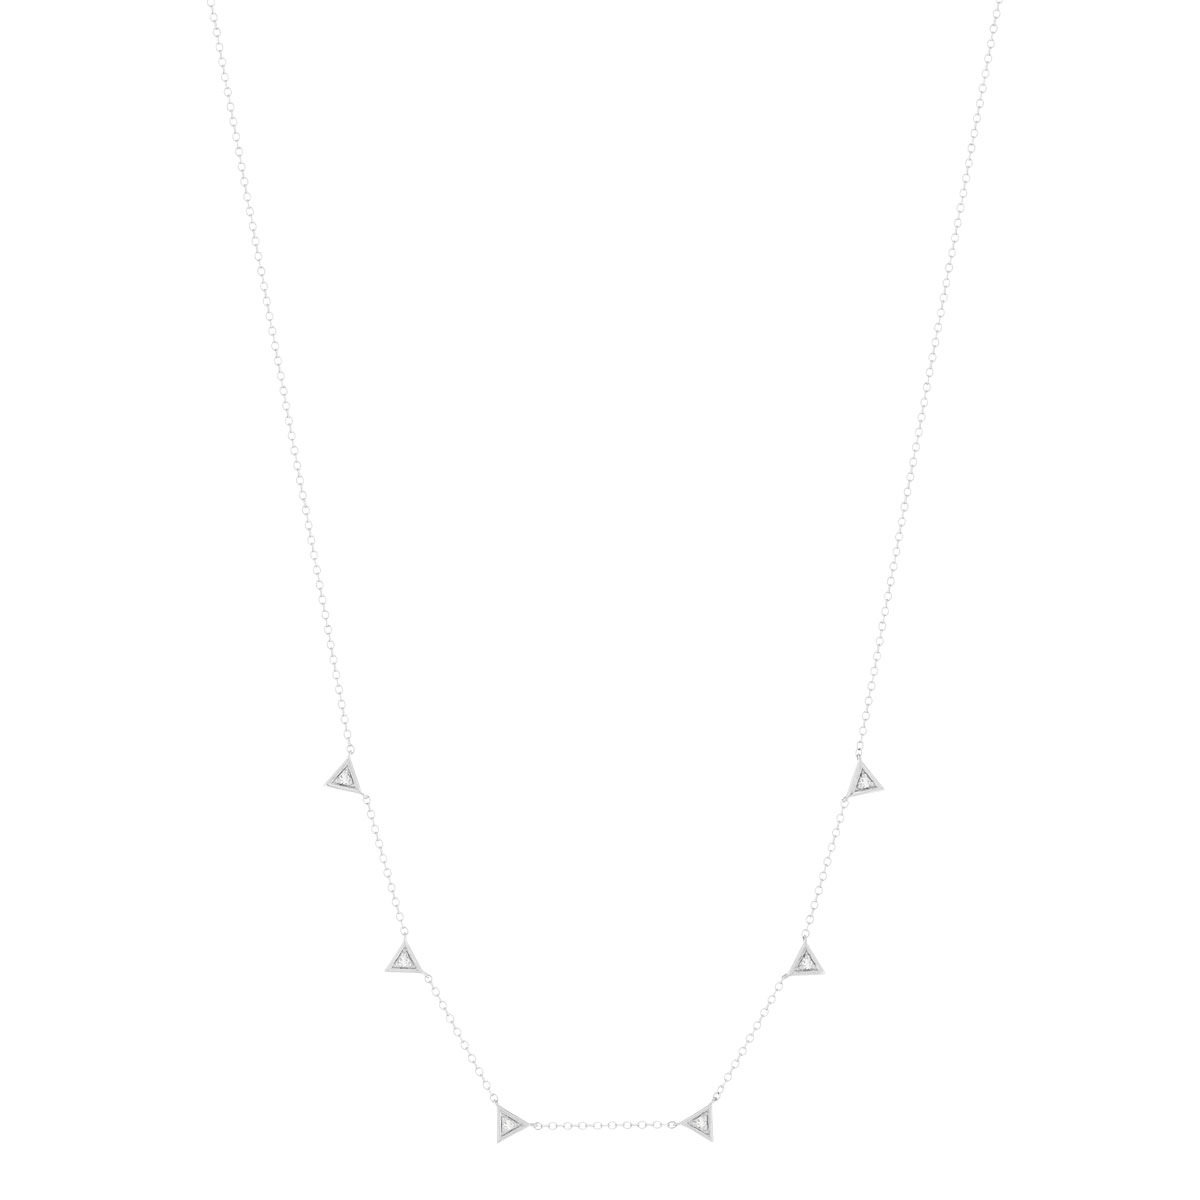 Collier or blanc 375, motif triangle, diamants. Longueur 45 cm. - vue 2